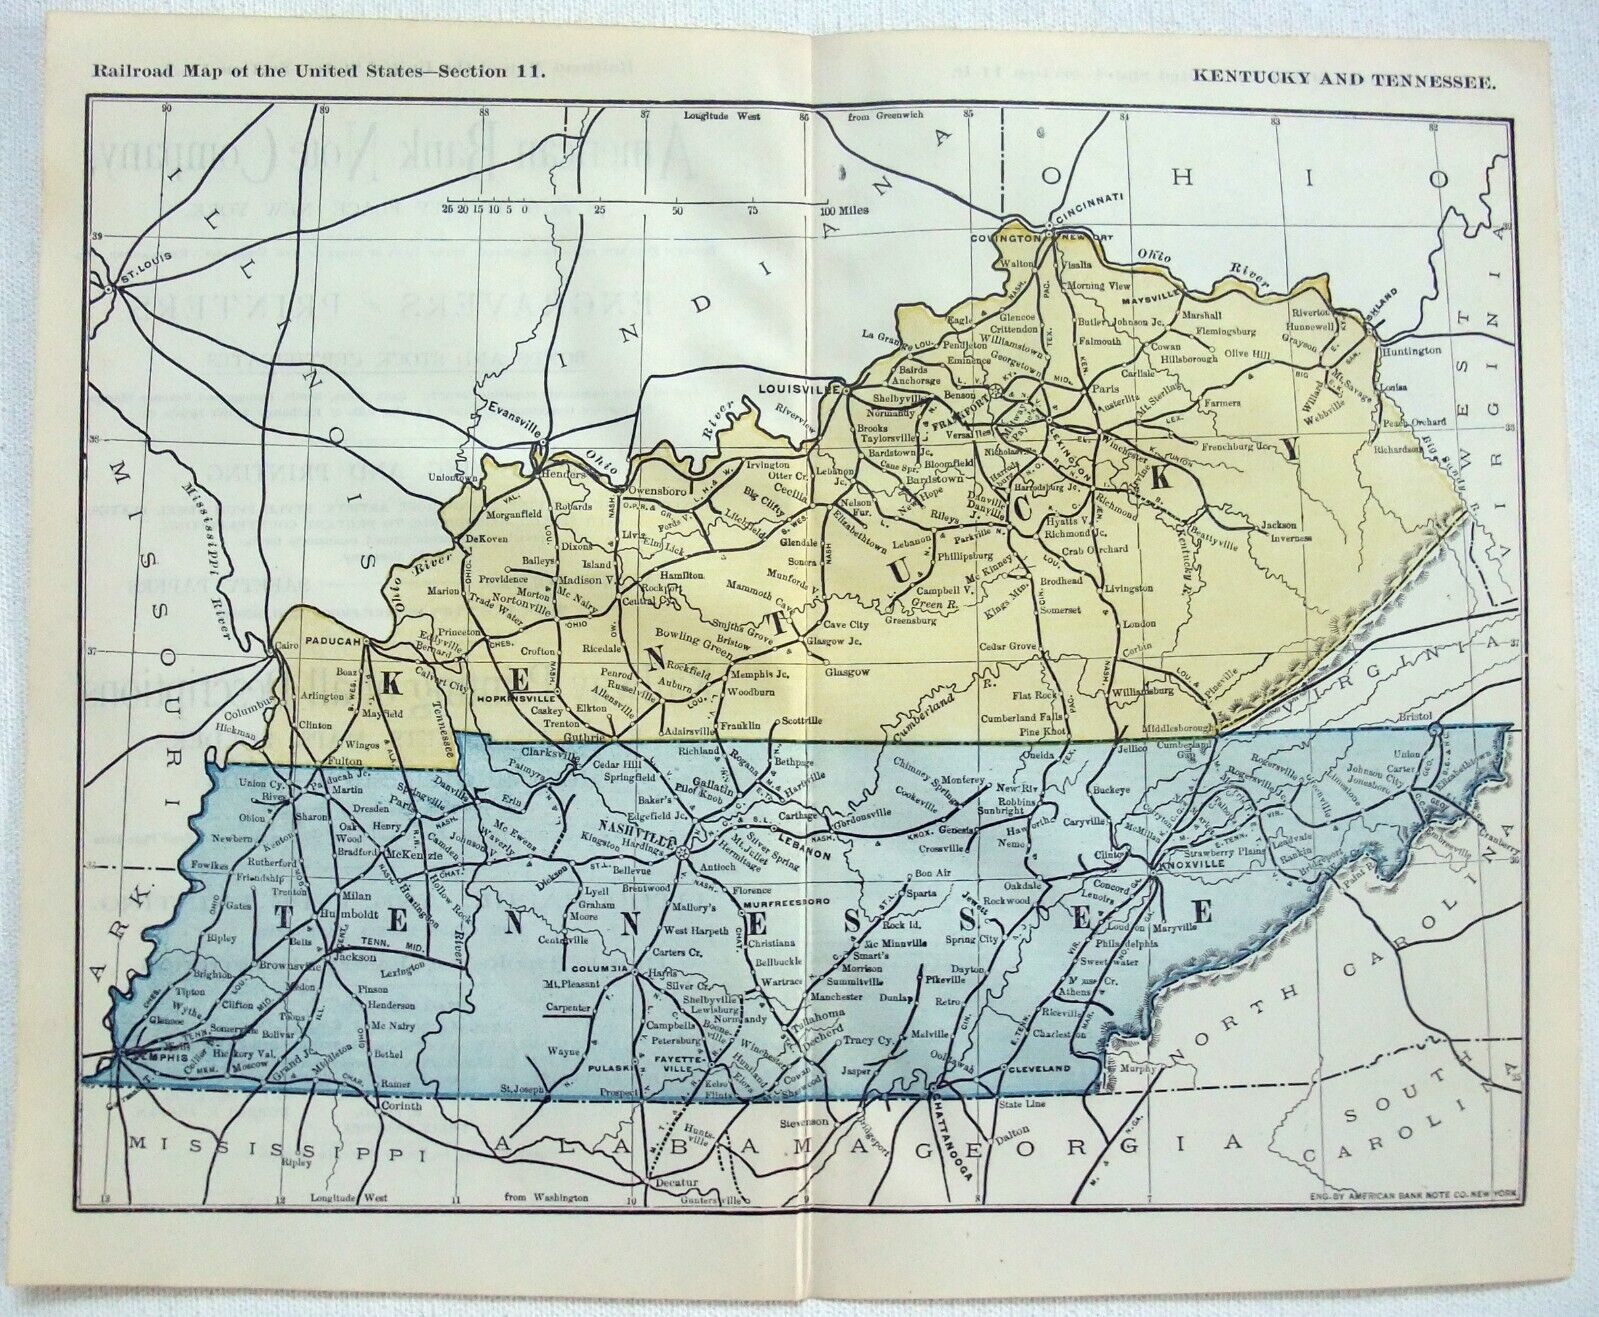 Kentucky & Tennessee - Original 1894 Railroad Map. Antique